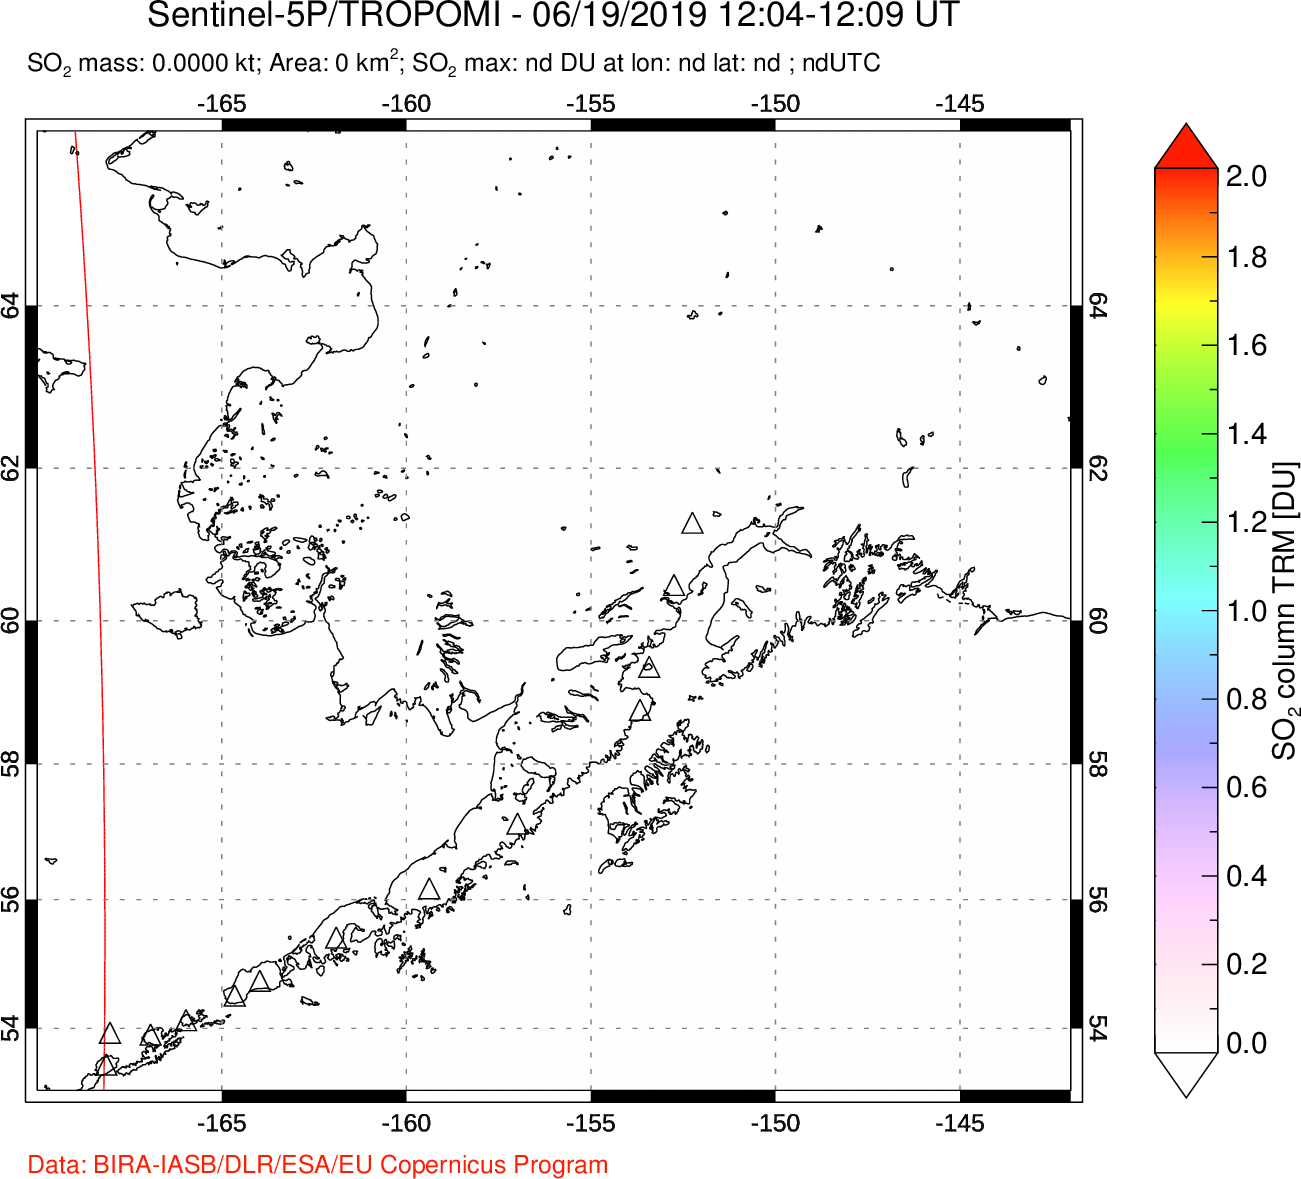 A sulfur dioxide image over Alaska, USA on Jun 19, 2019.